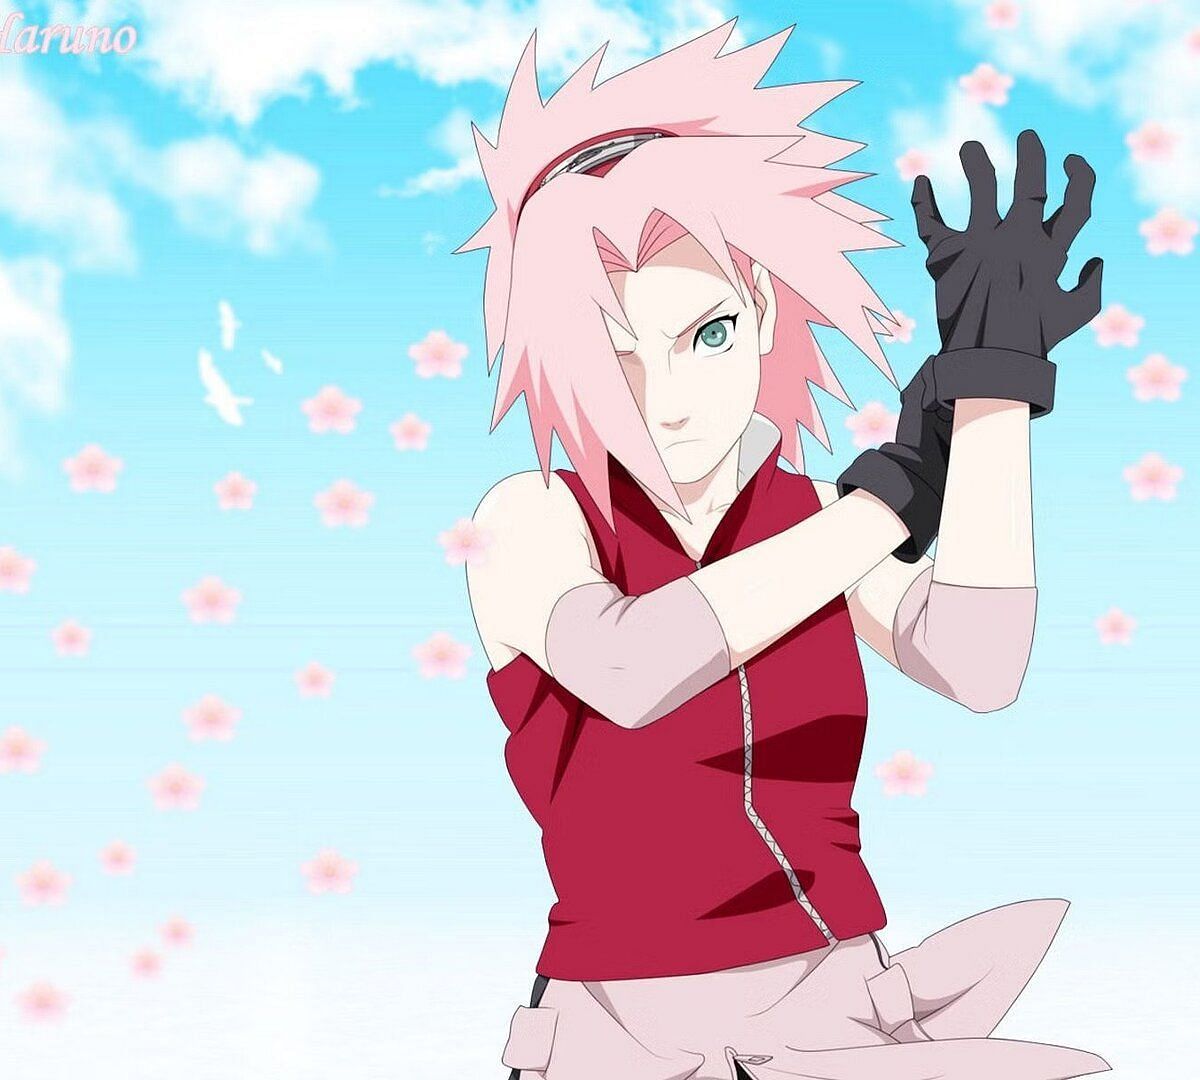 Sakura (Image via Pierrot Studios)